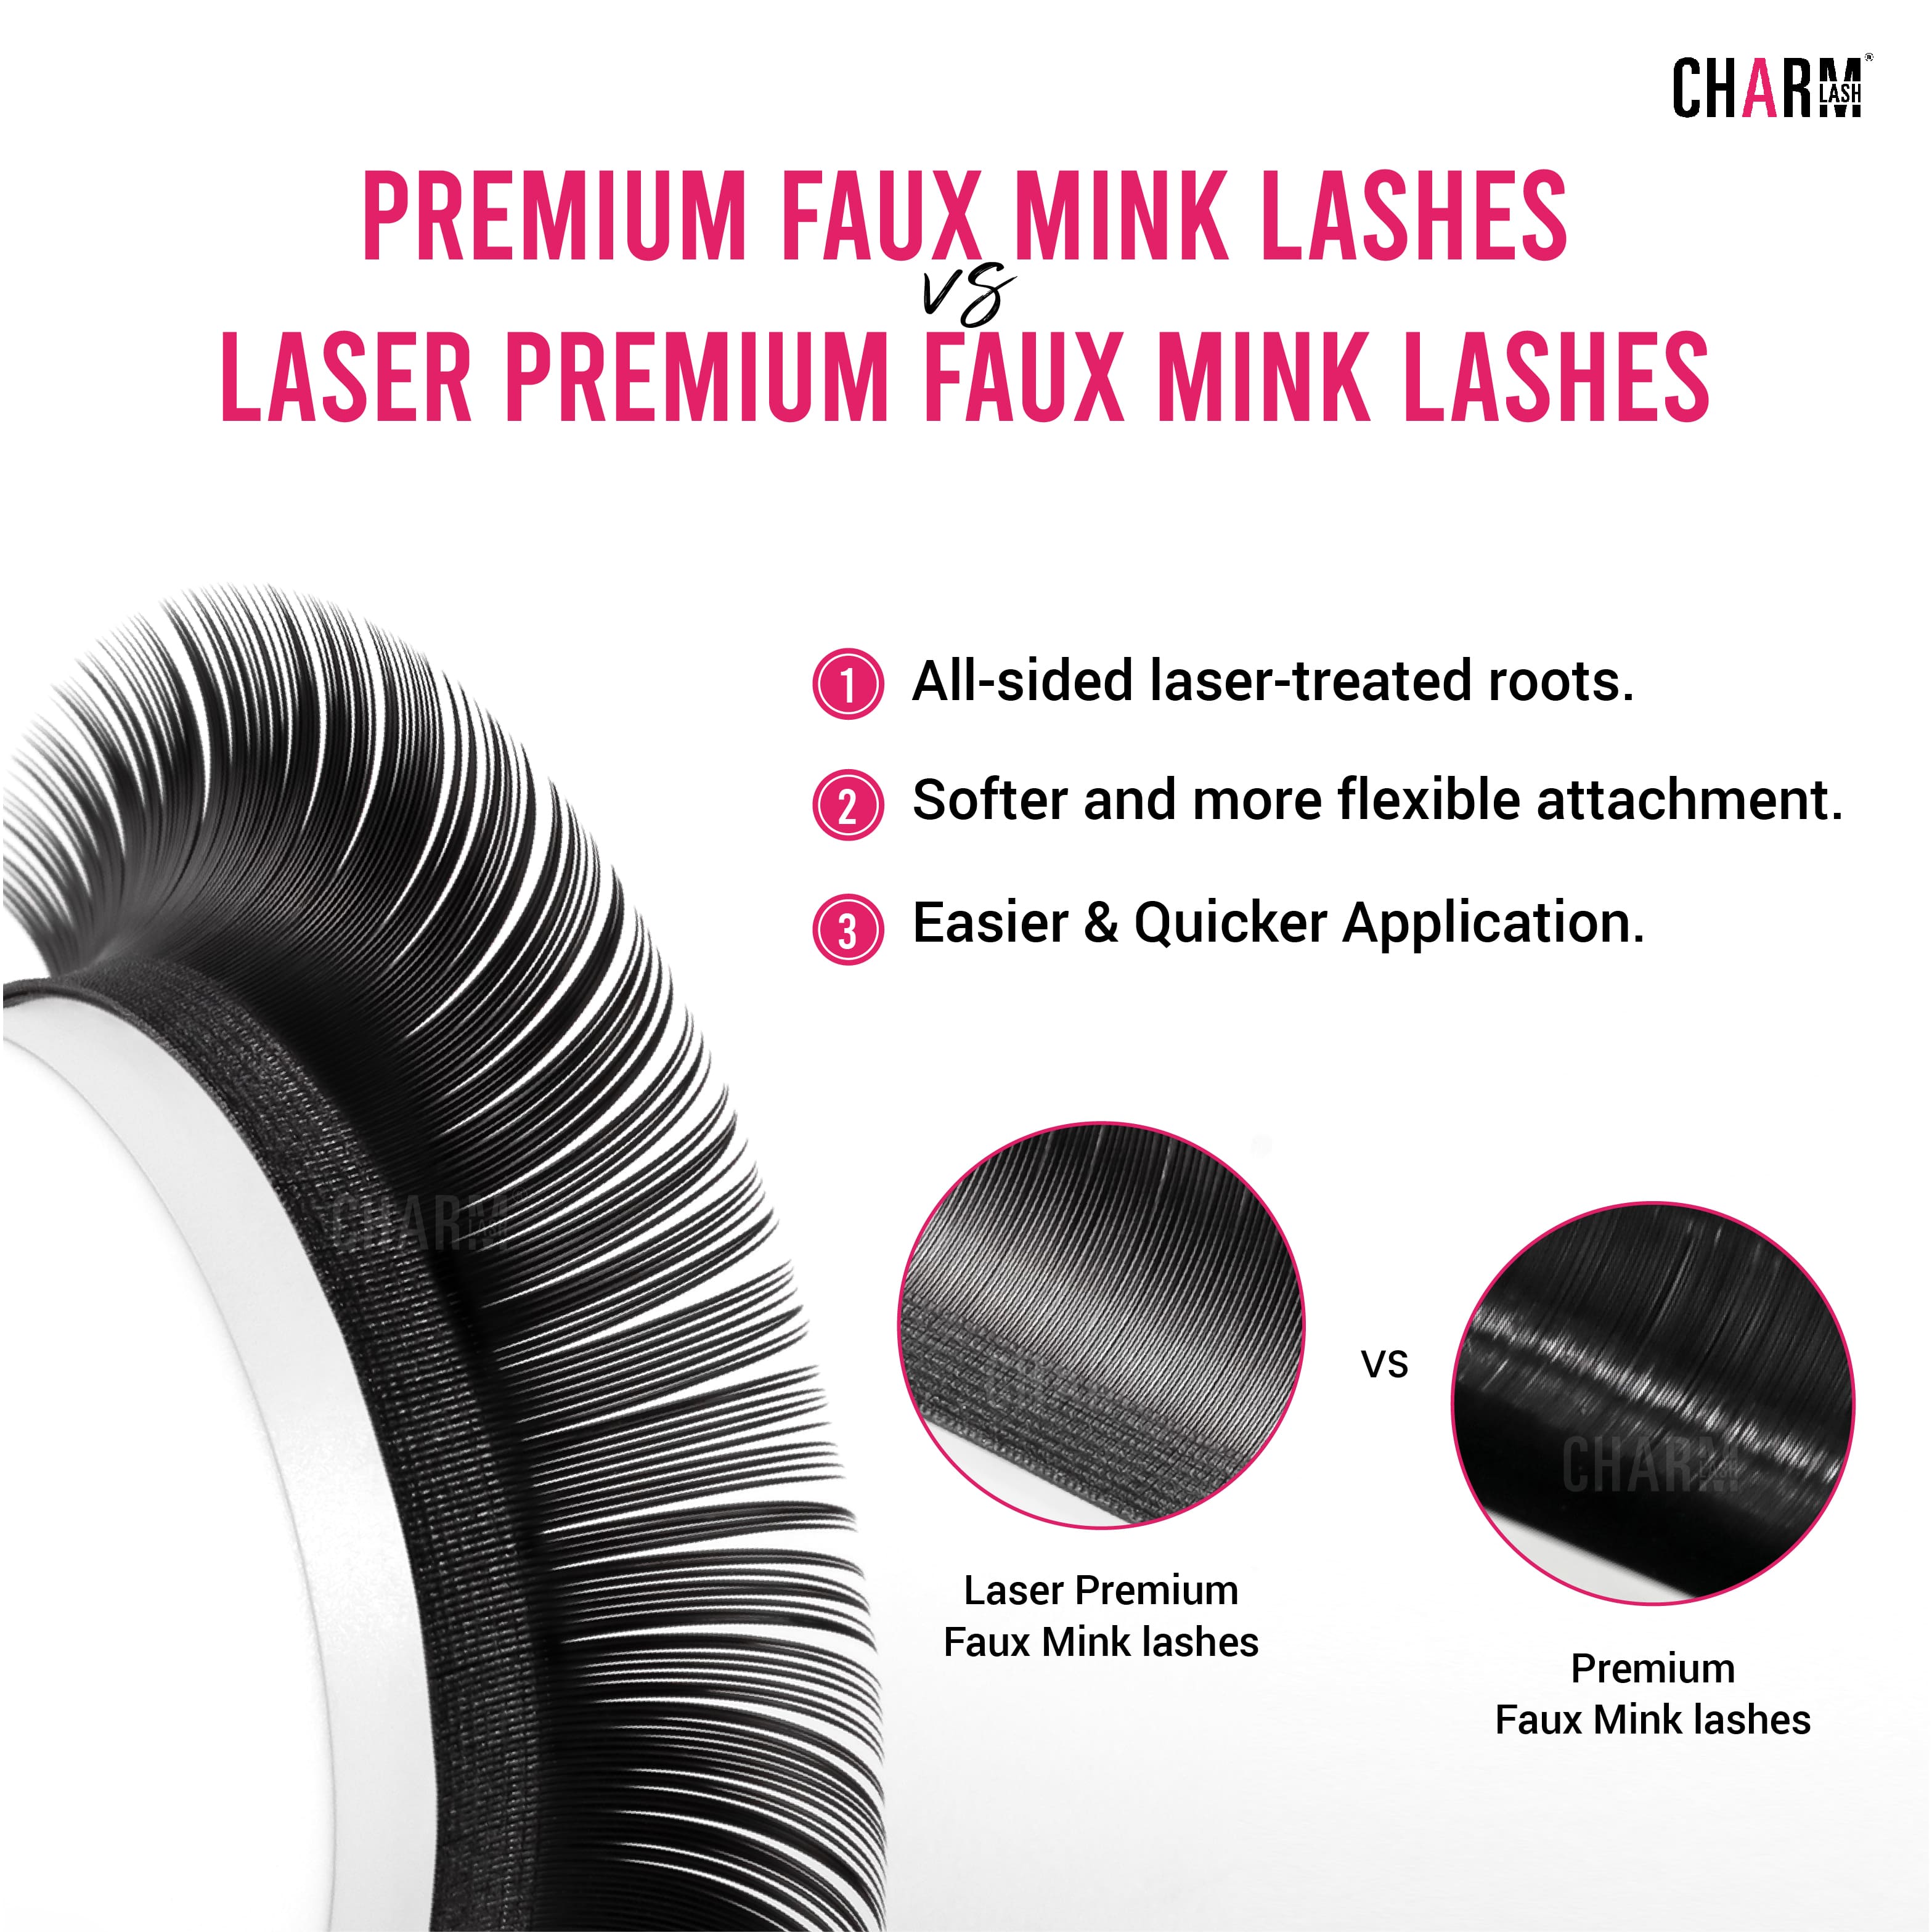 Premium faux mink lashes and Laser Premium faux mink lashes